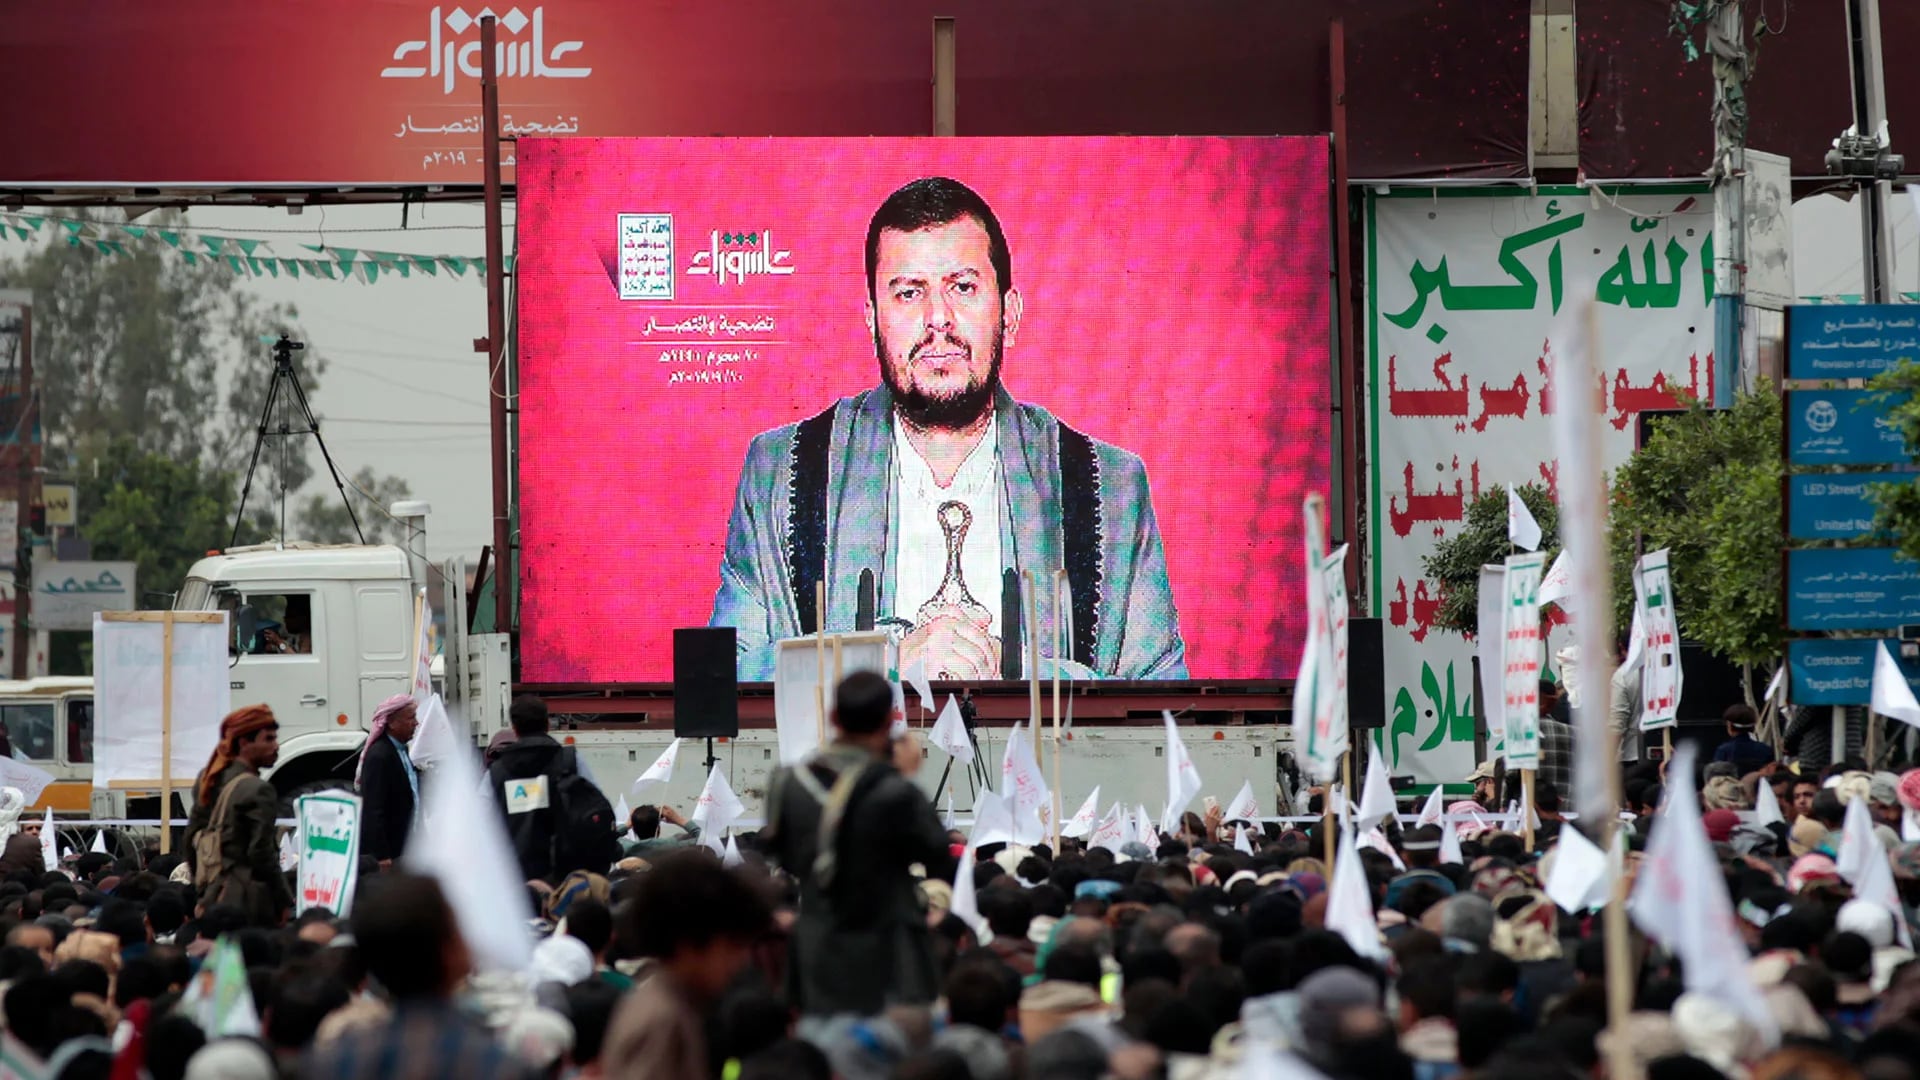 Los partidarios de los rebeldes hutíes asisten a un discurso pronunciado en una pantalla por el líder del grupo, Abdul Malik al-Huthi, durante un mitin en conmemoración de la fiesta religiosa musulmana chií de Ashura en Saná, el 10 de septiembre de 2019 (MOHAMMED HUWAIS / AFP)